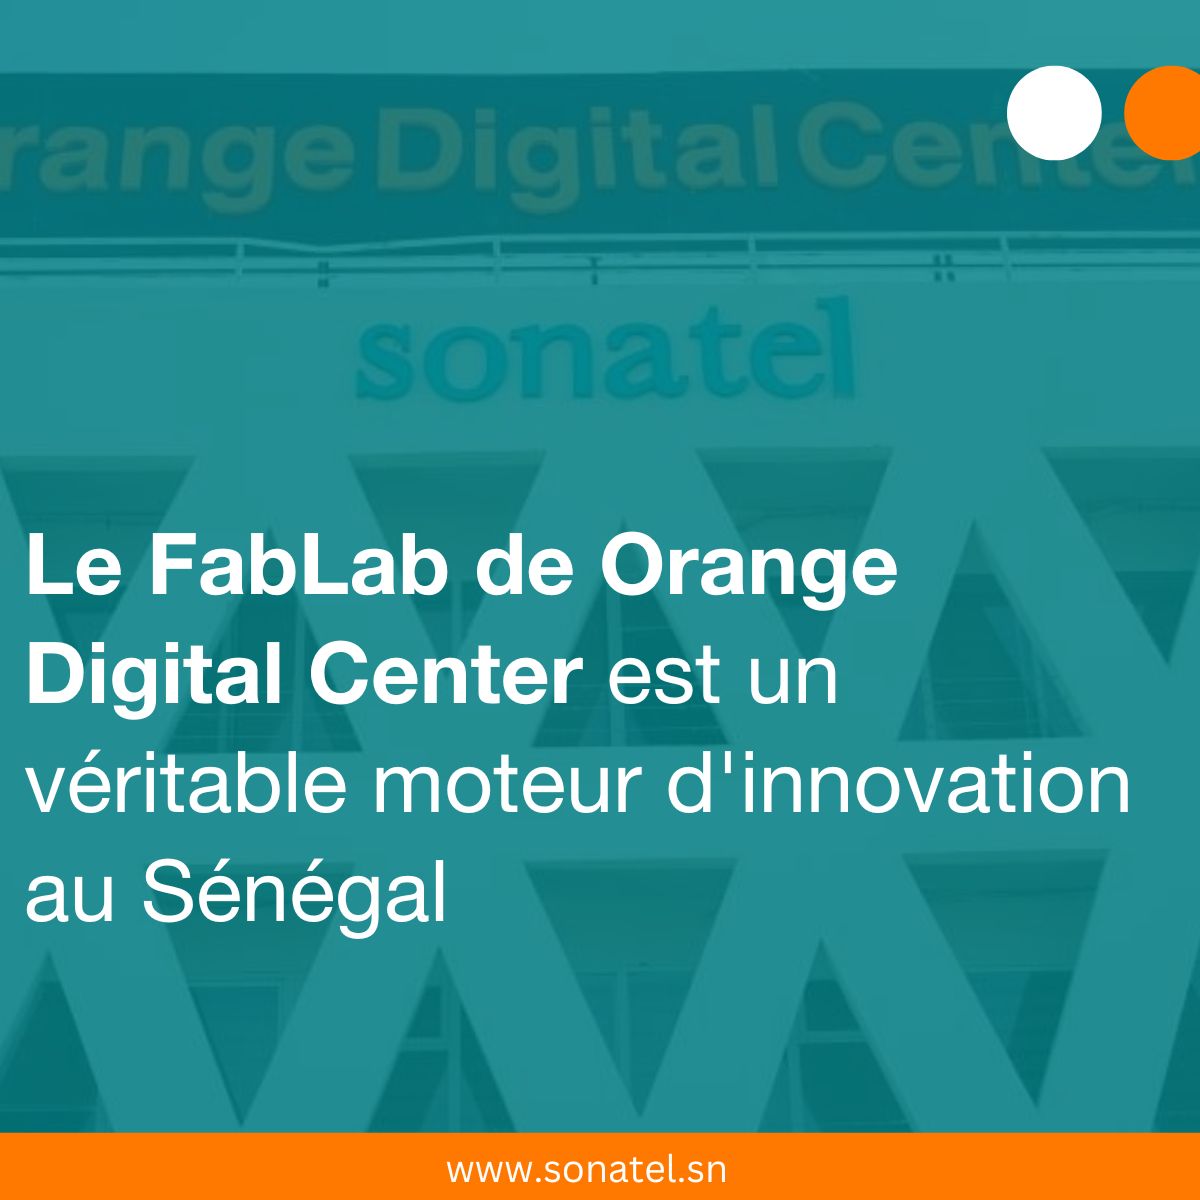 Le FabLab de Orange Digital Center est un véritable moteur d’innovation au Sénégal